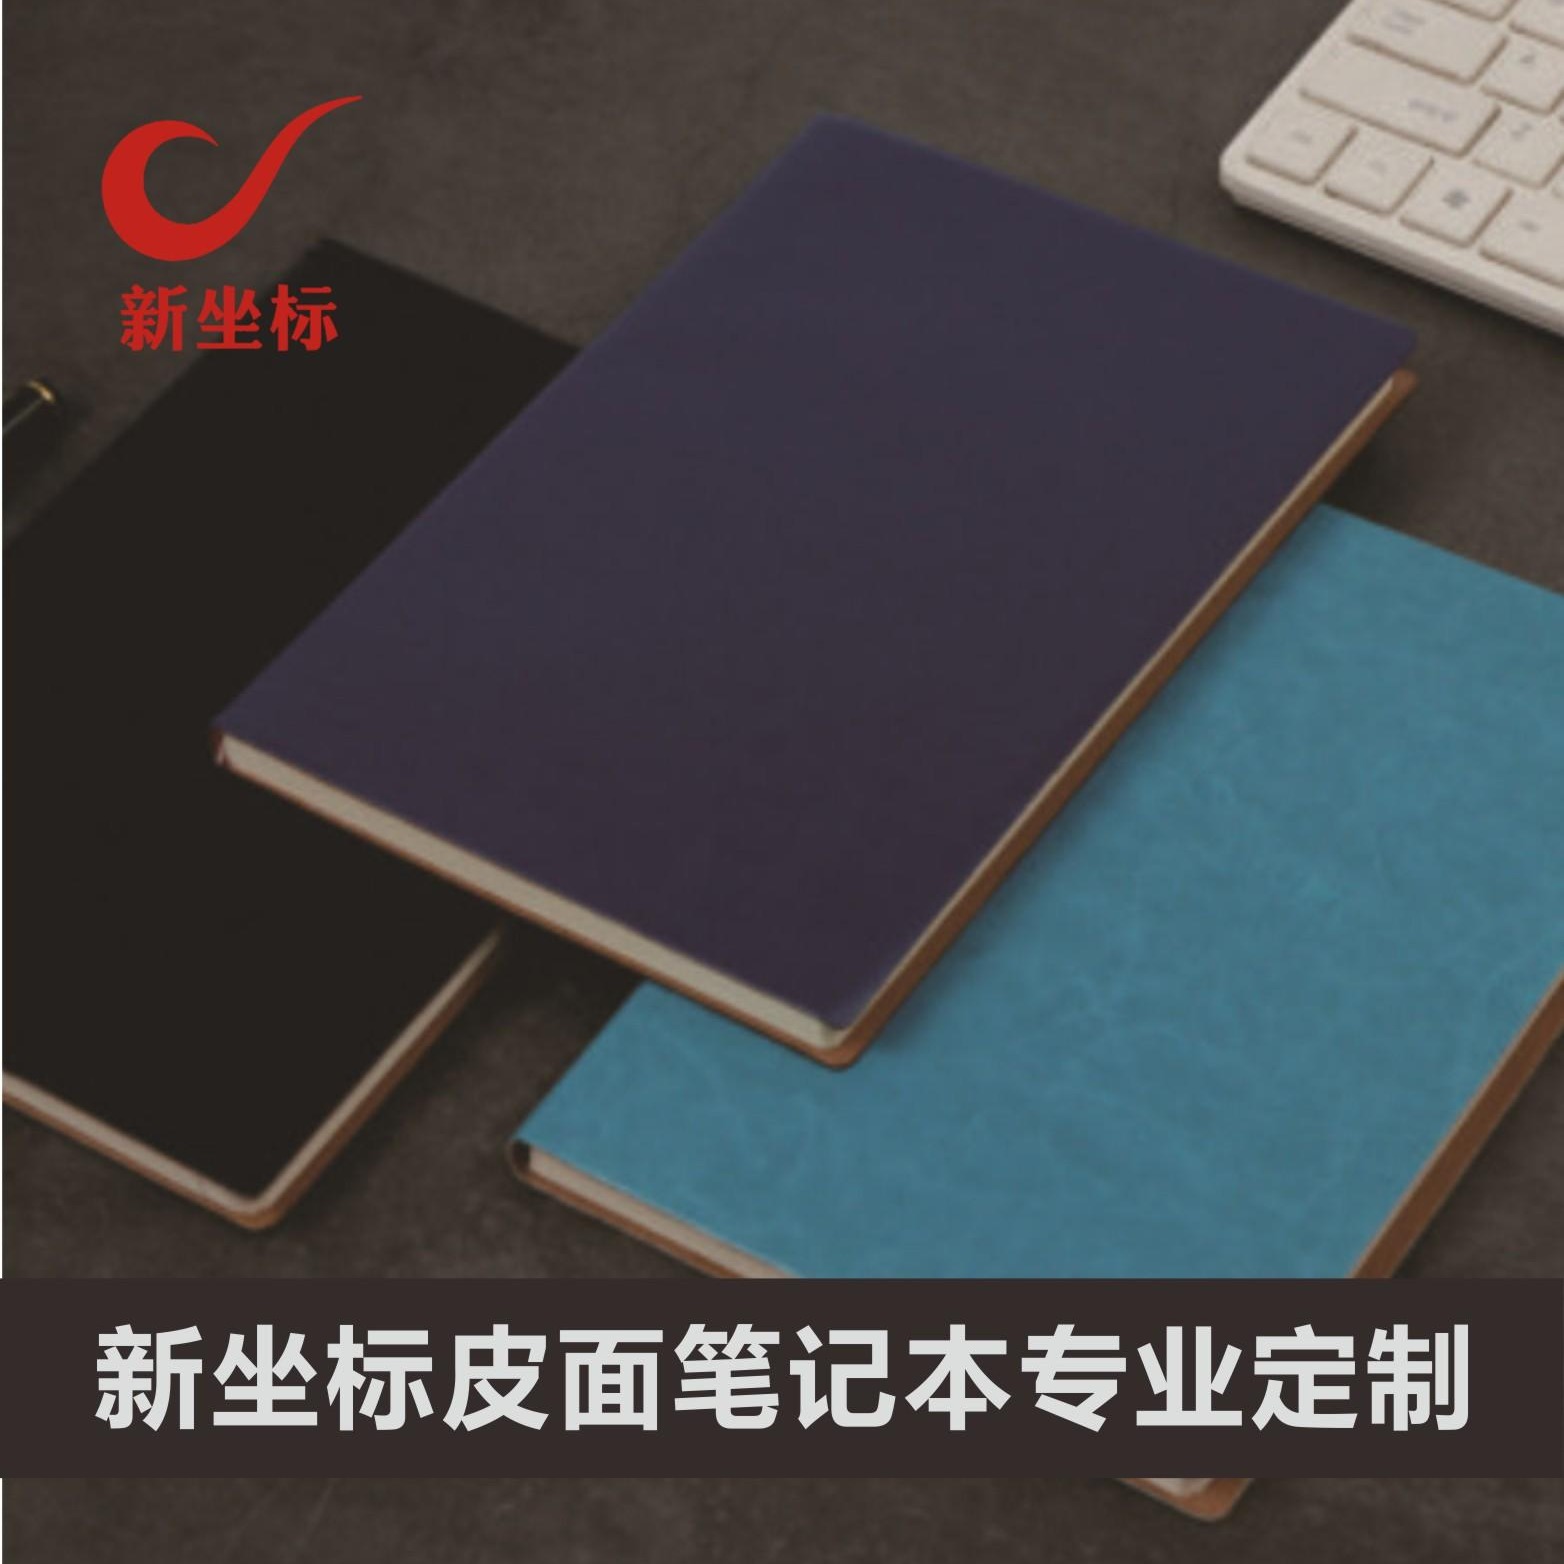 仿皮面商务定制款笔记本 可压印logo 定做内页 皮质B5尺寸会议记事本武汉厂家